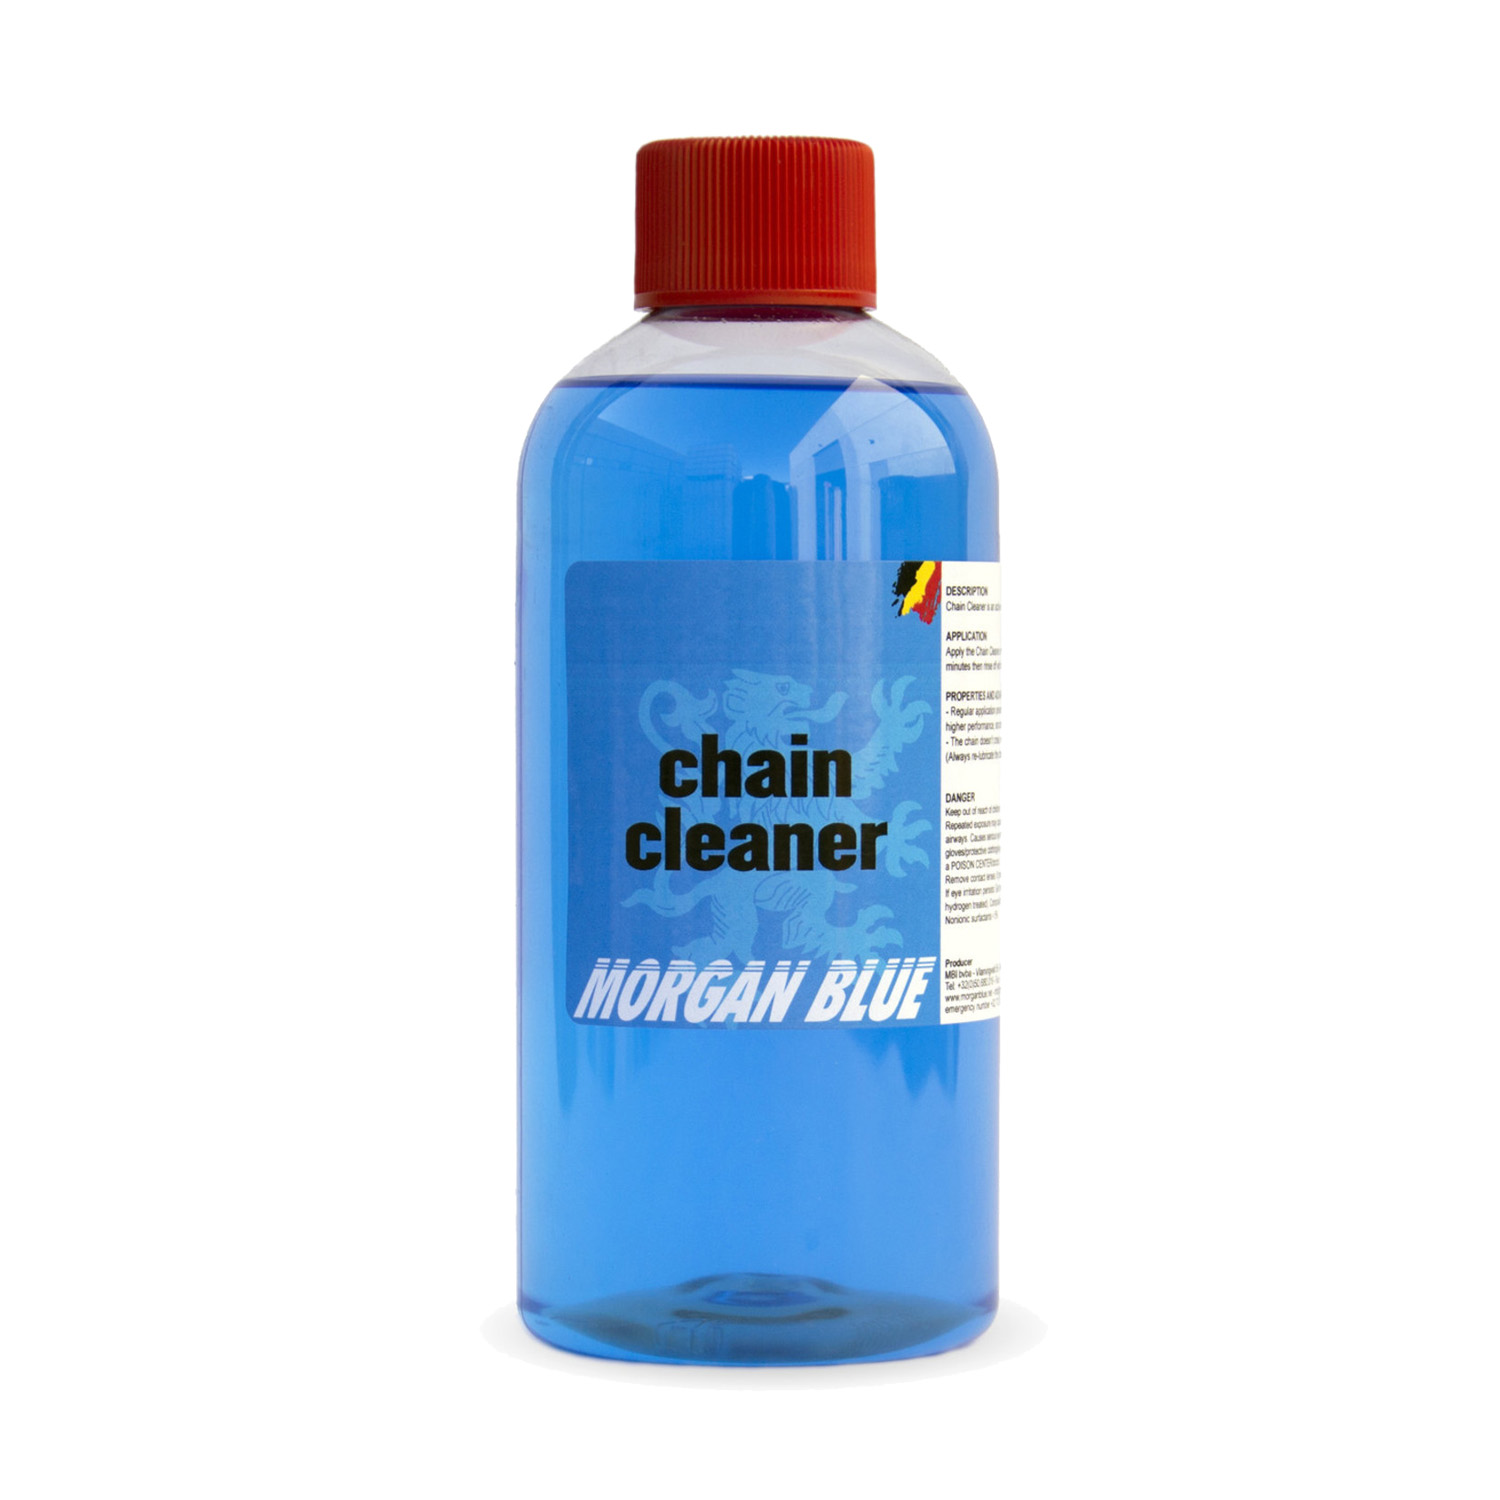 Morgan blue Chain cleaner